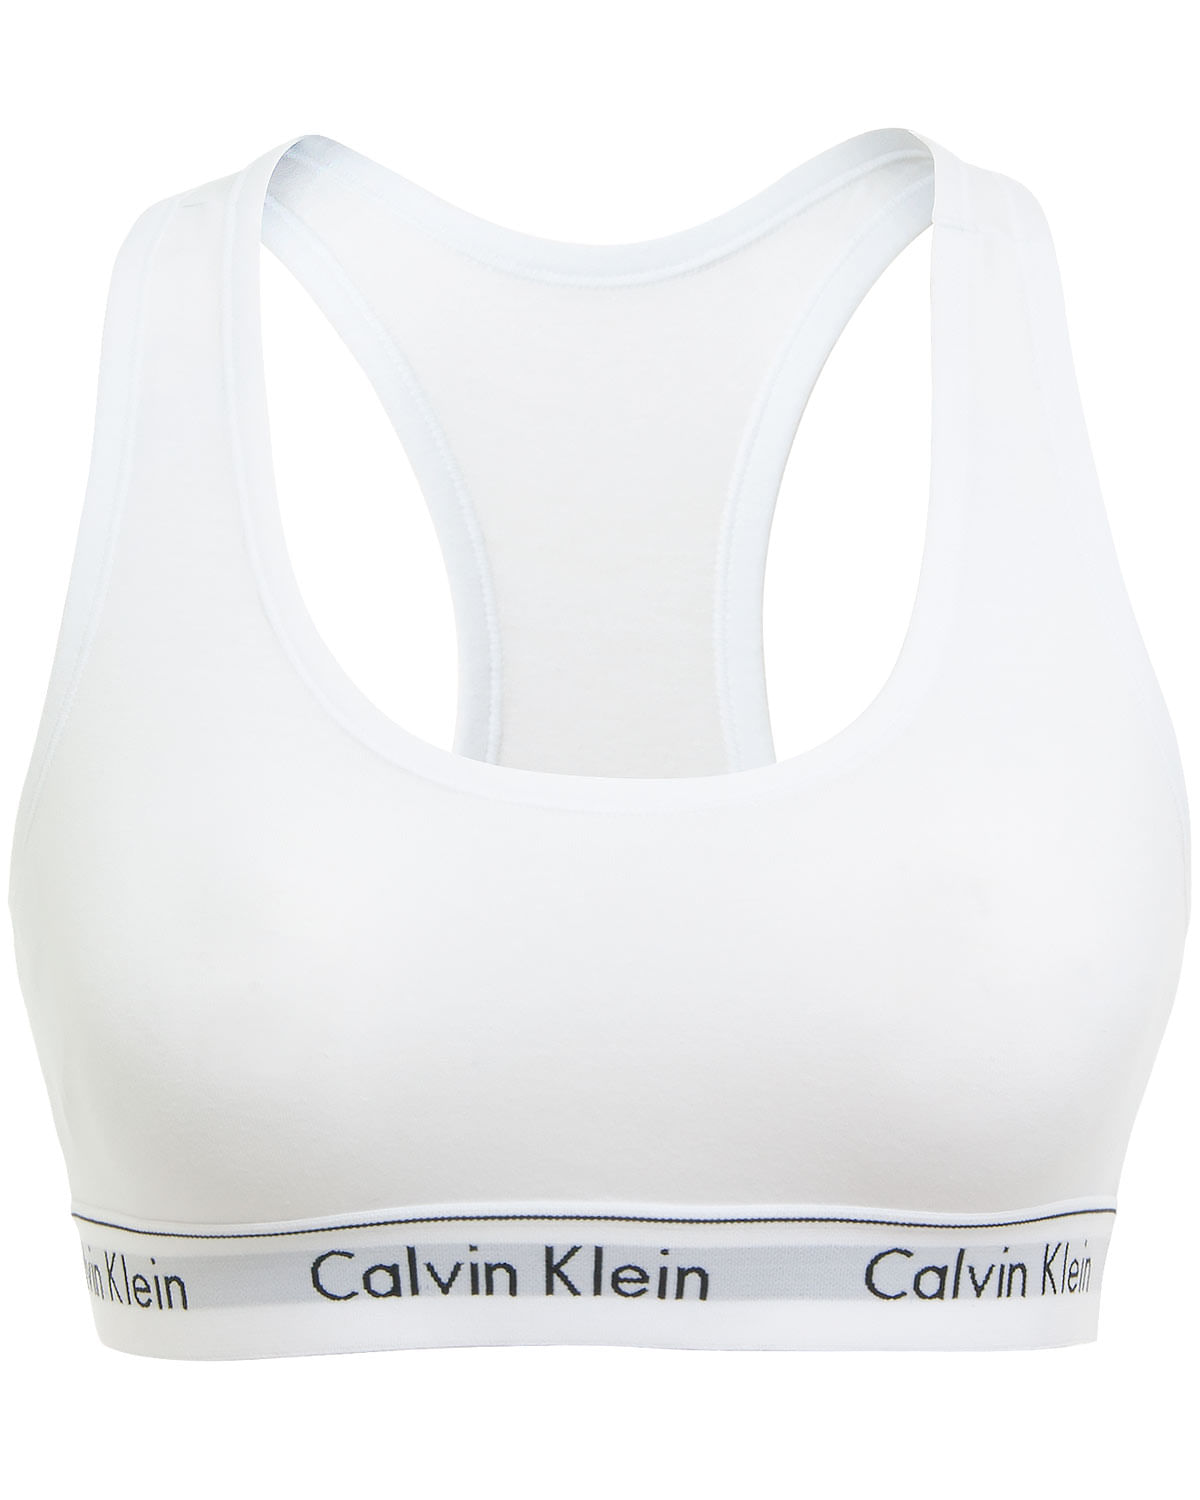 Bralette Mujer Calvin Klein Logo Modern Cotton Grey